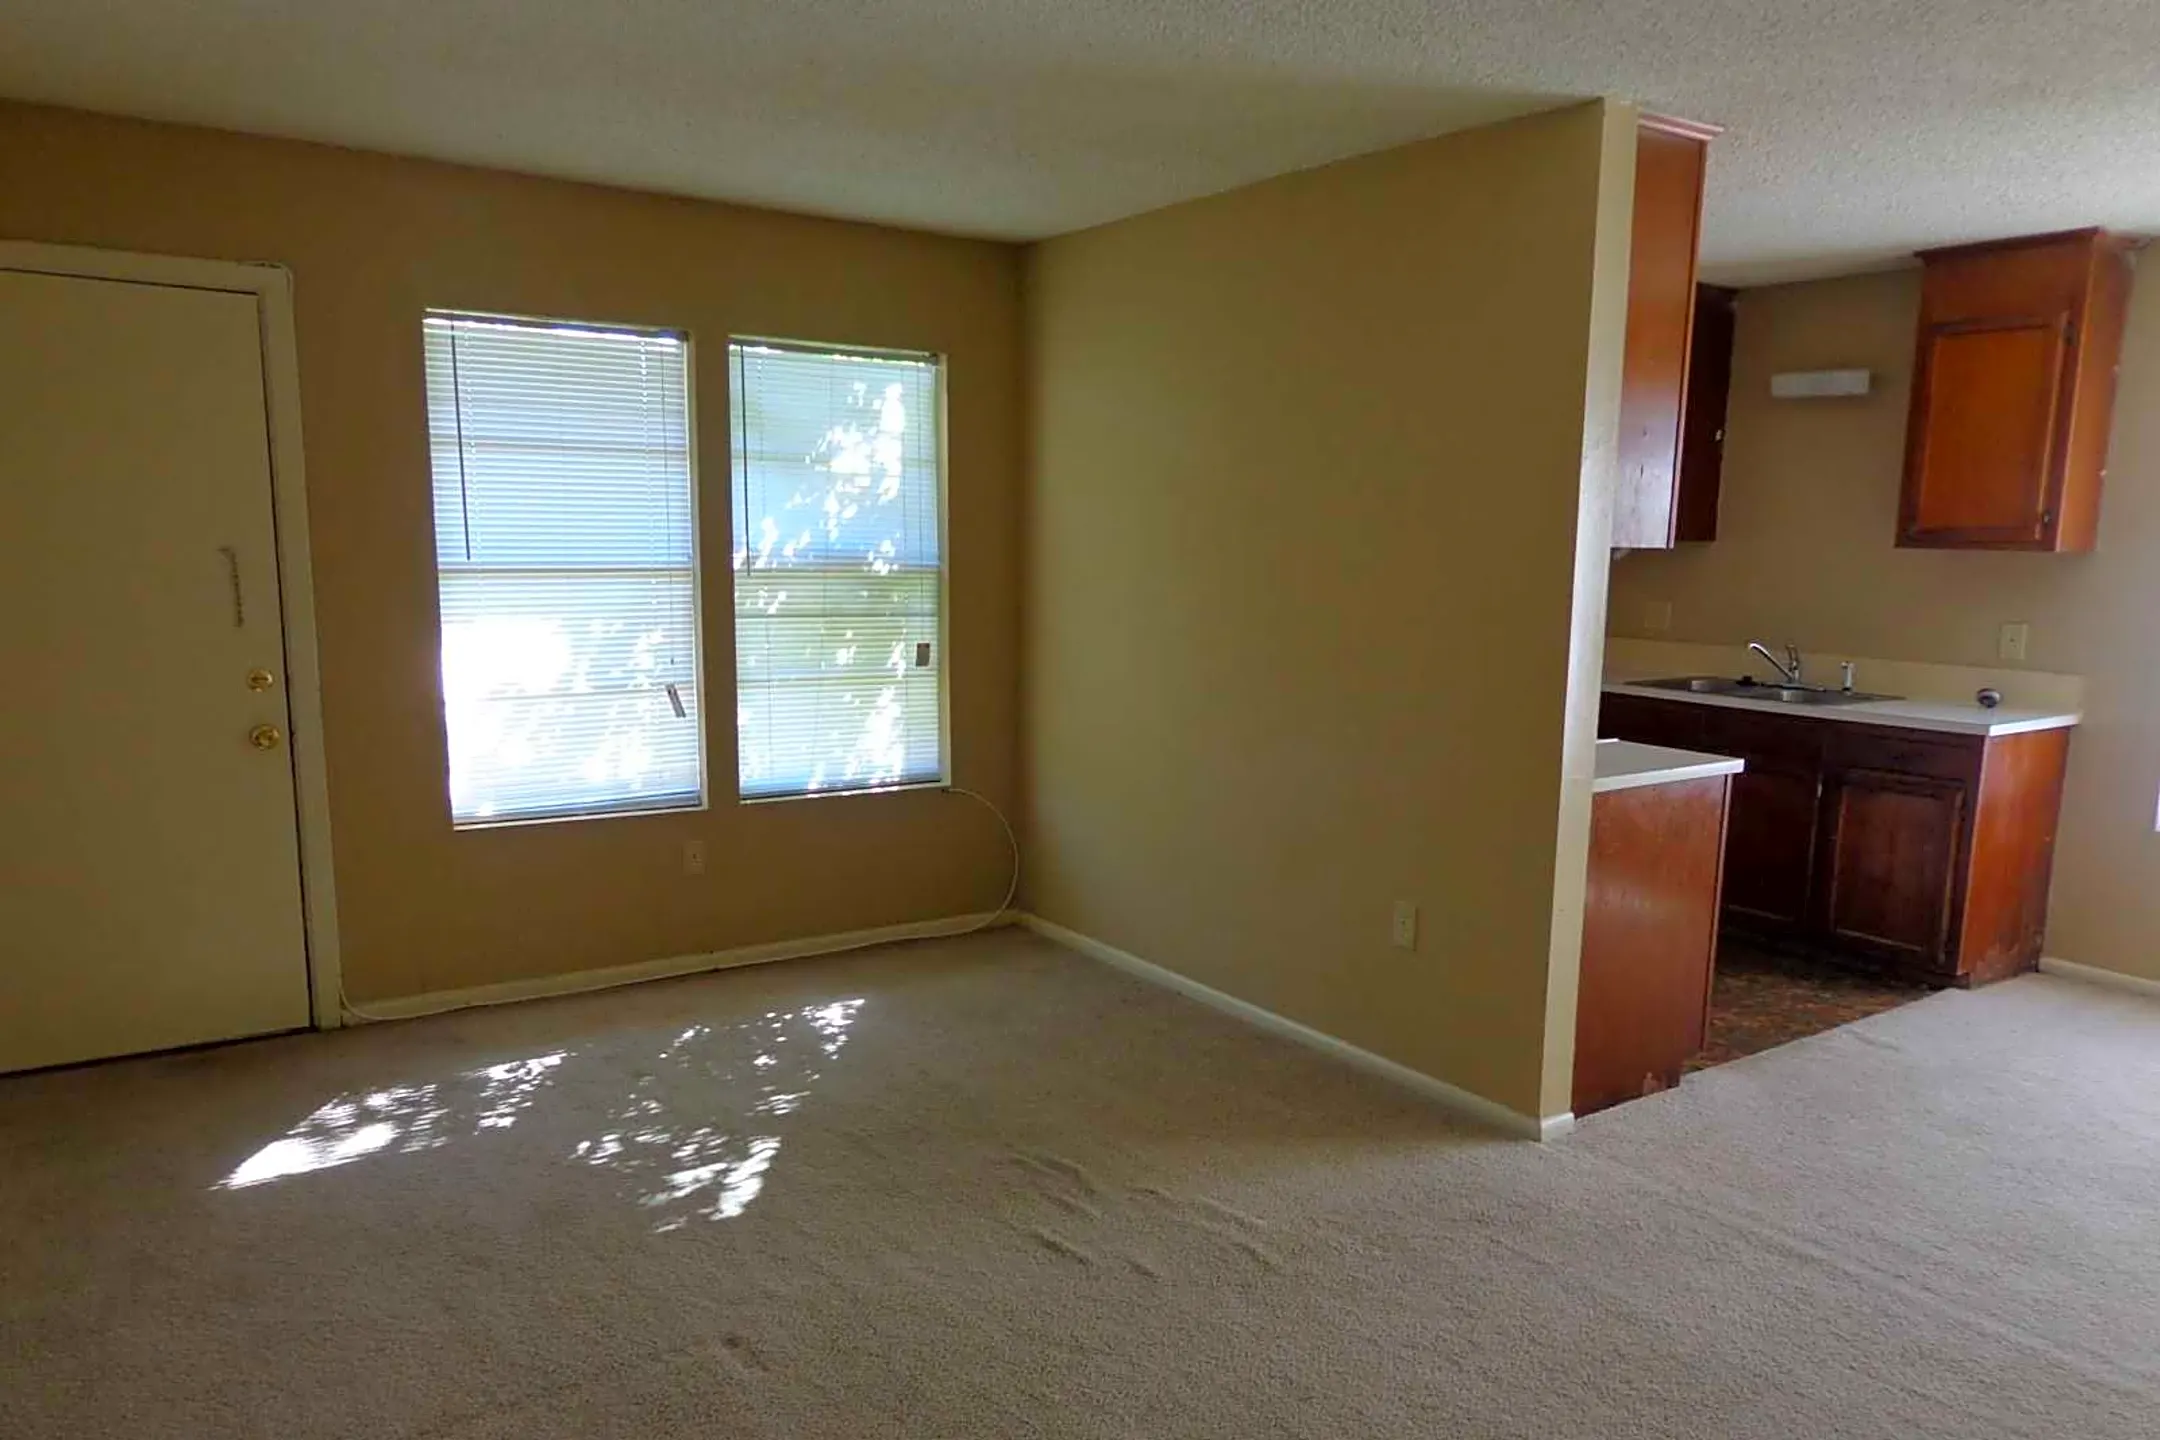 Living Room - Garry Lewis Properties - Baton Rouge, LA